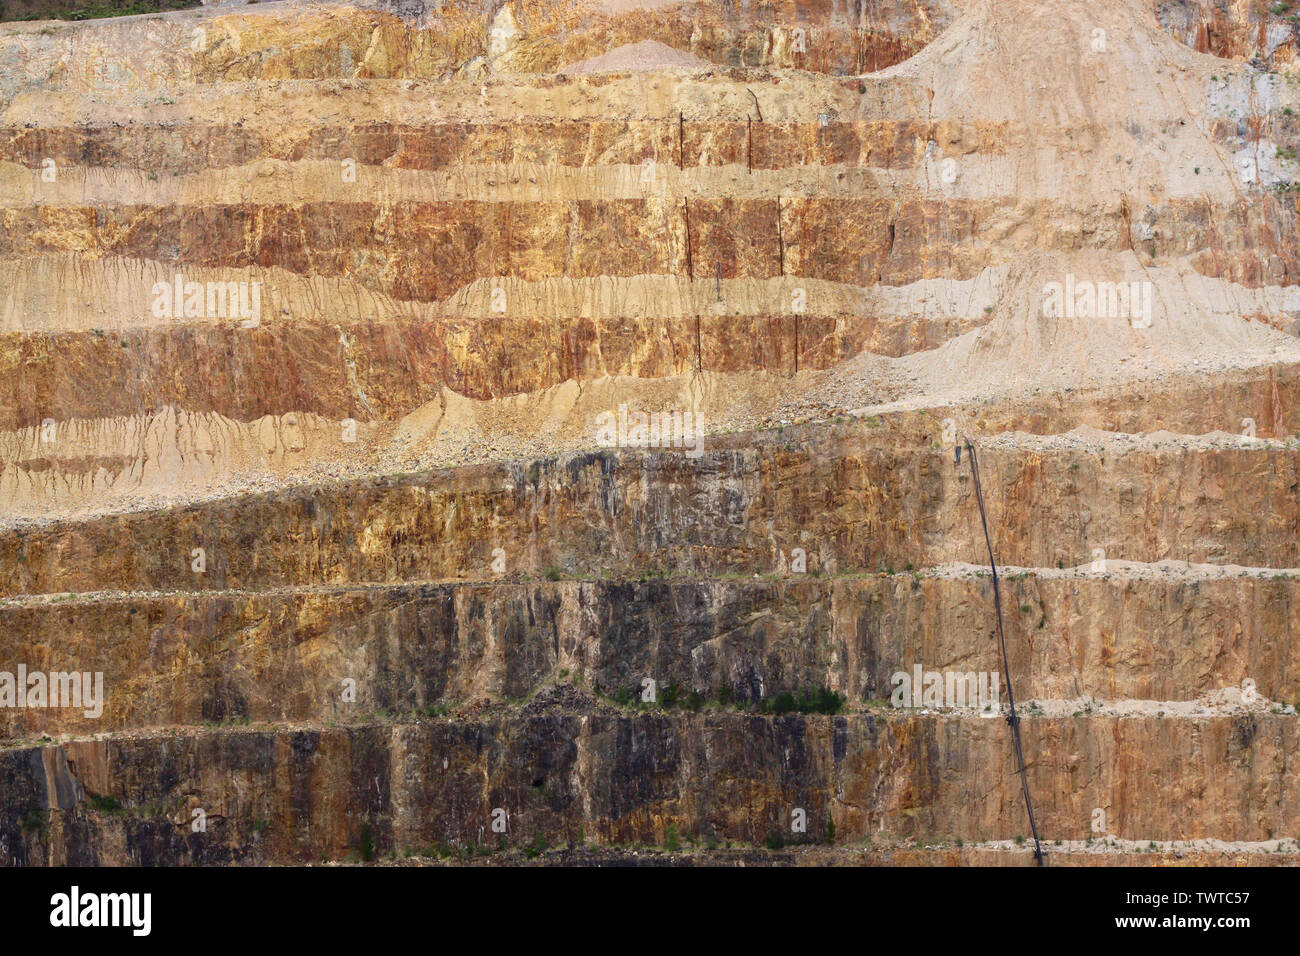 Die Martha Mine ist eine Goldmine in der Neuseeländischen Stadt Waihi. Das Bild zeigt die Terrassen der Tagebau Goldmine. Stockfoto